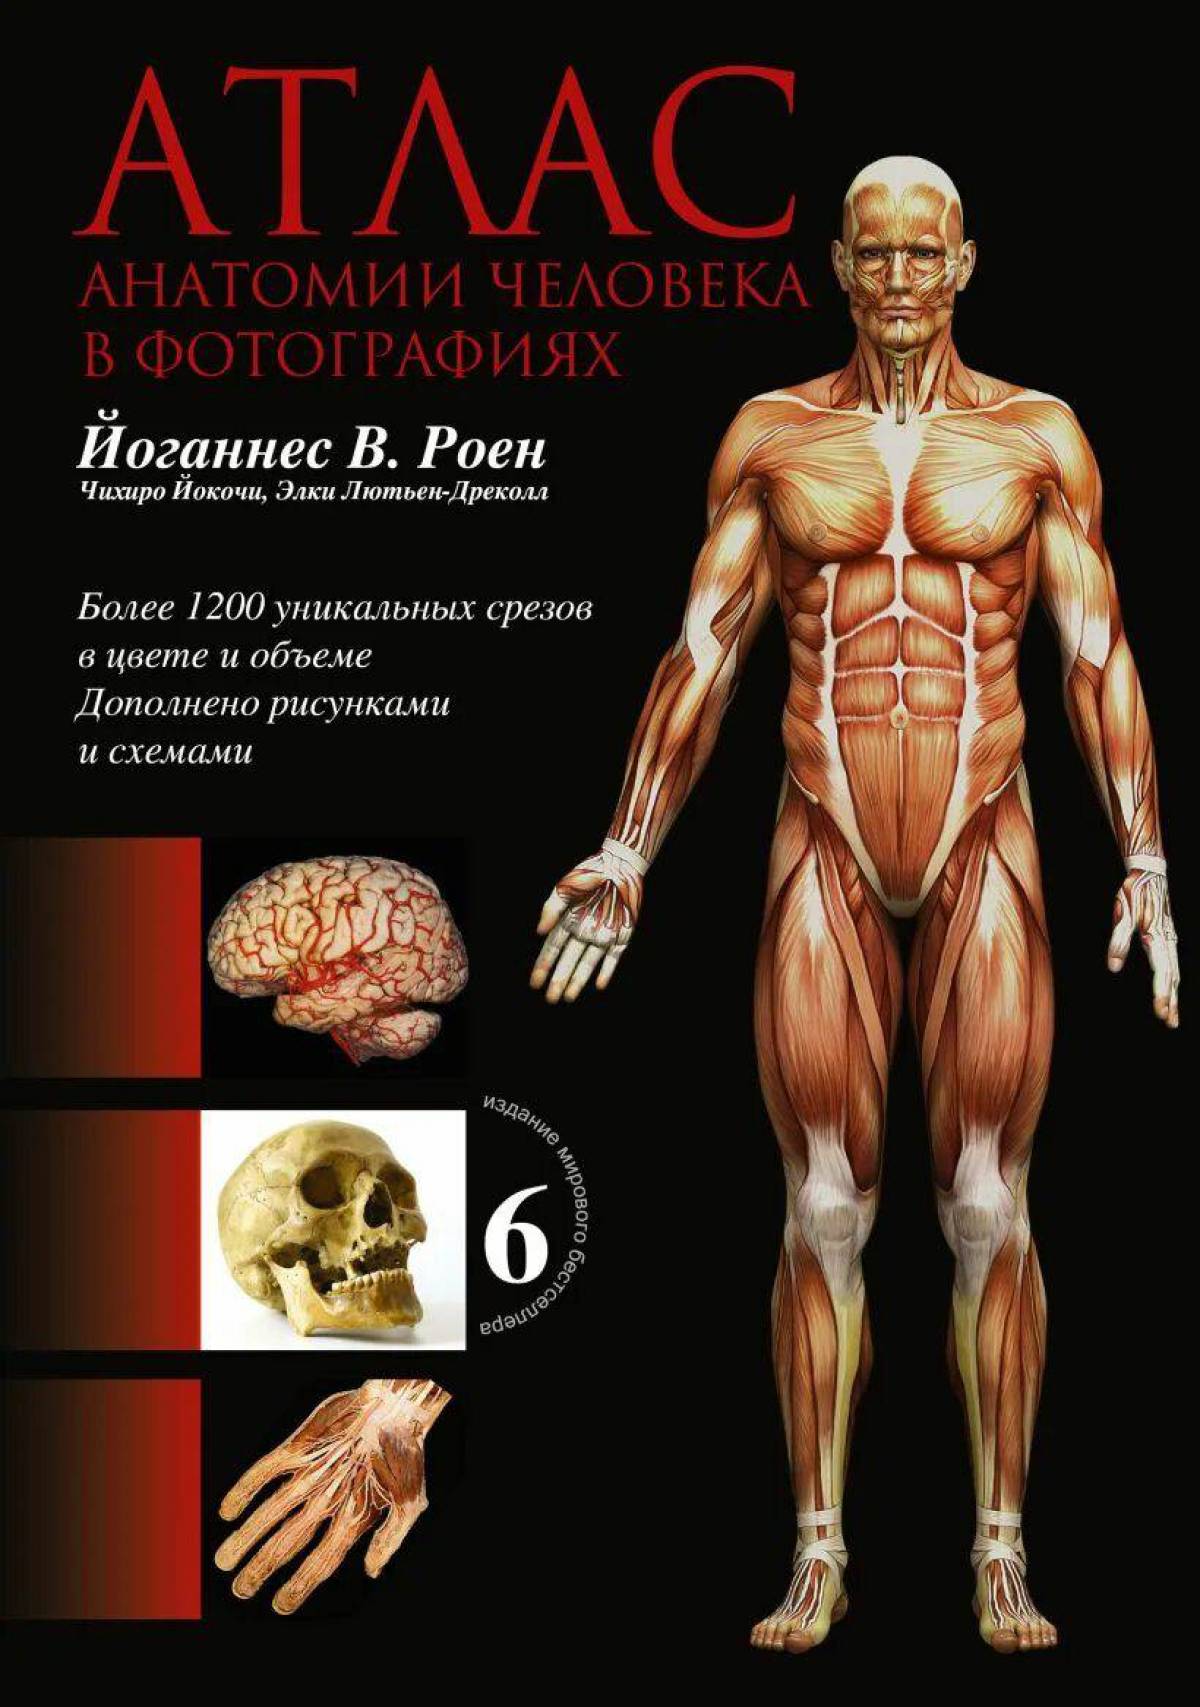 Атлас физиология человека #22